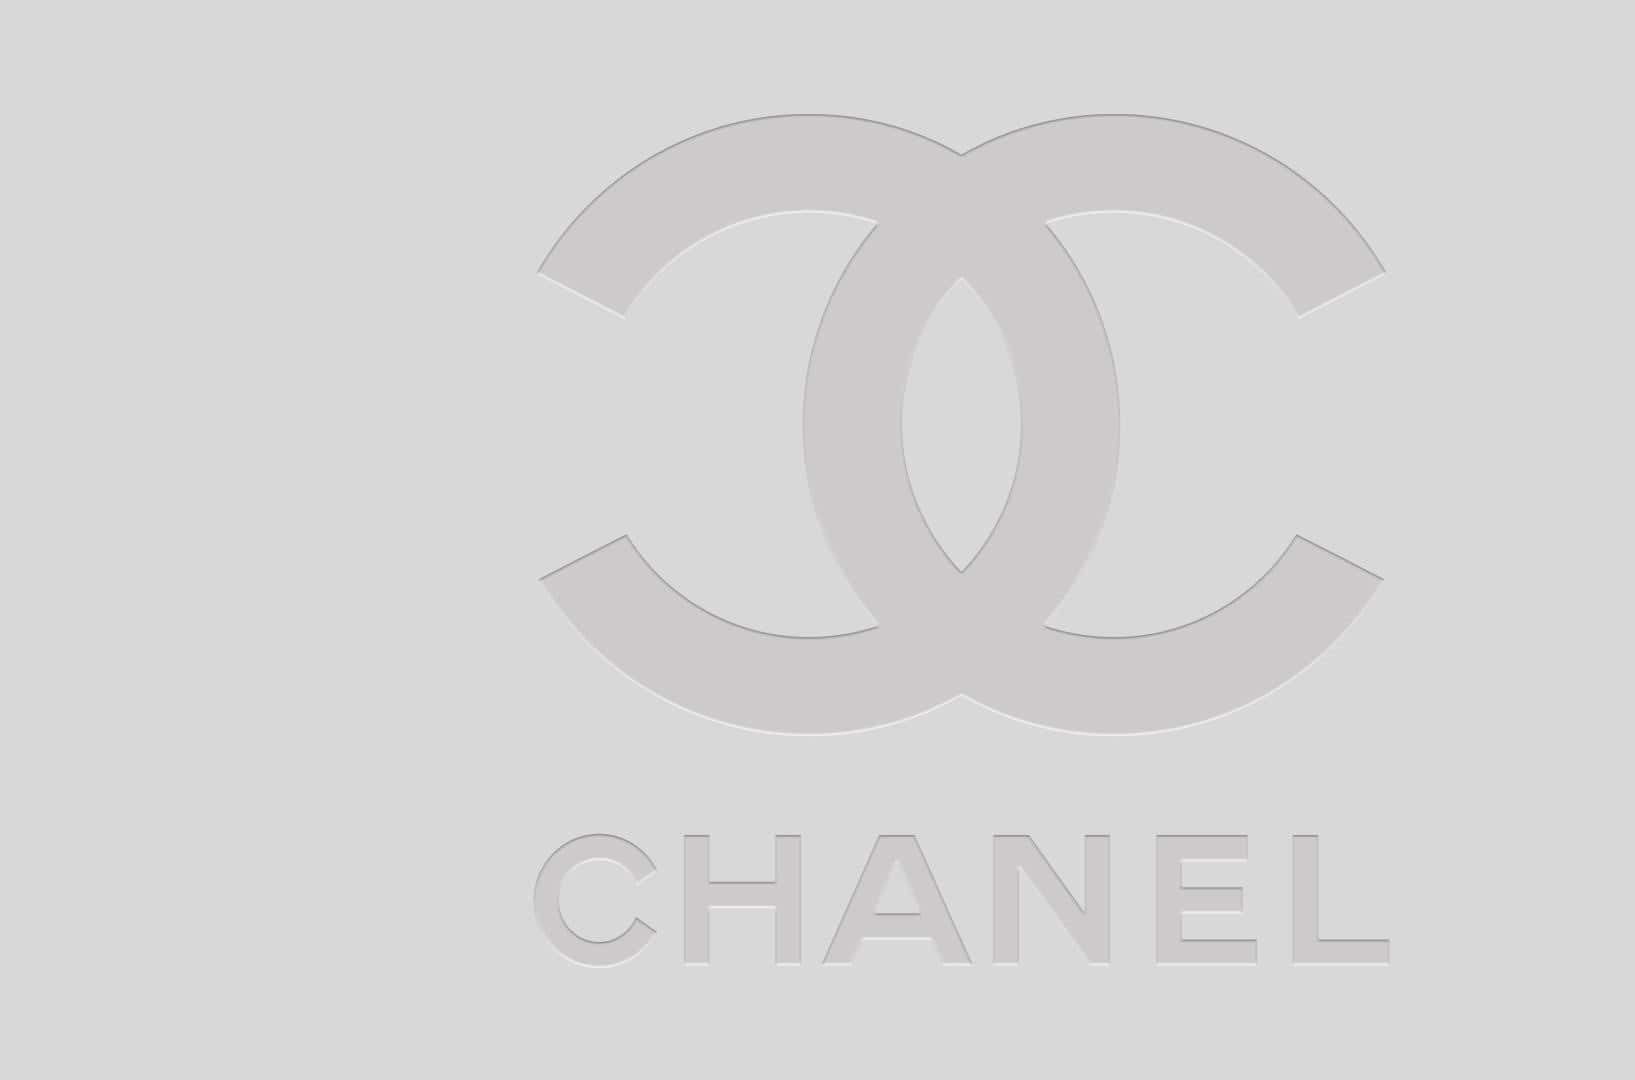 Illogo Iconico Di Chanel Con Le Sue C Intrecciate.